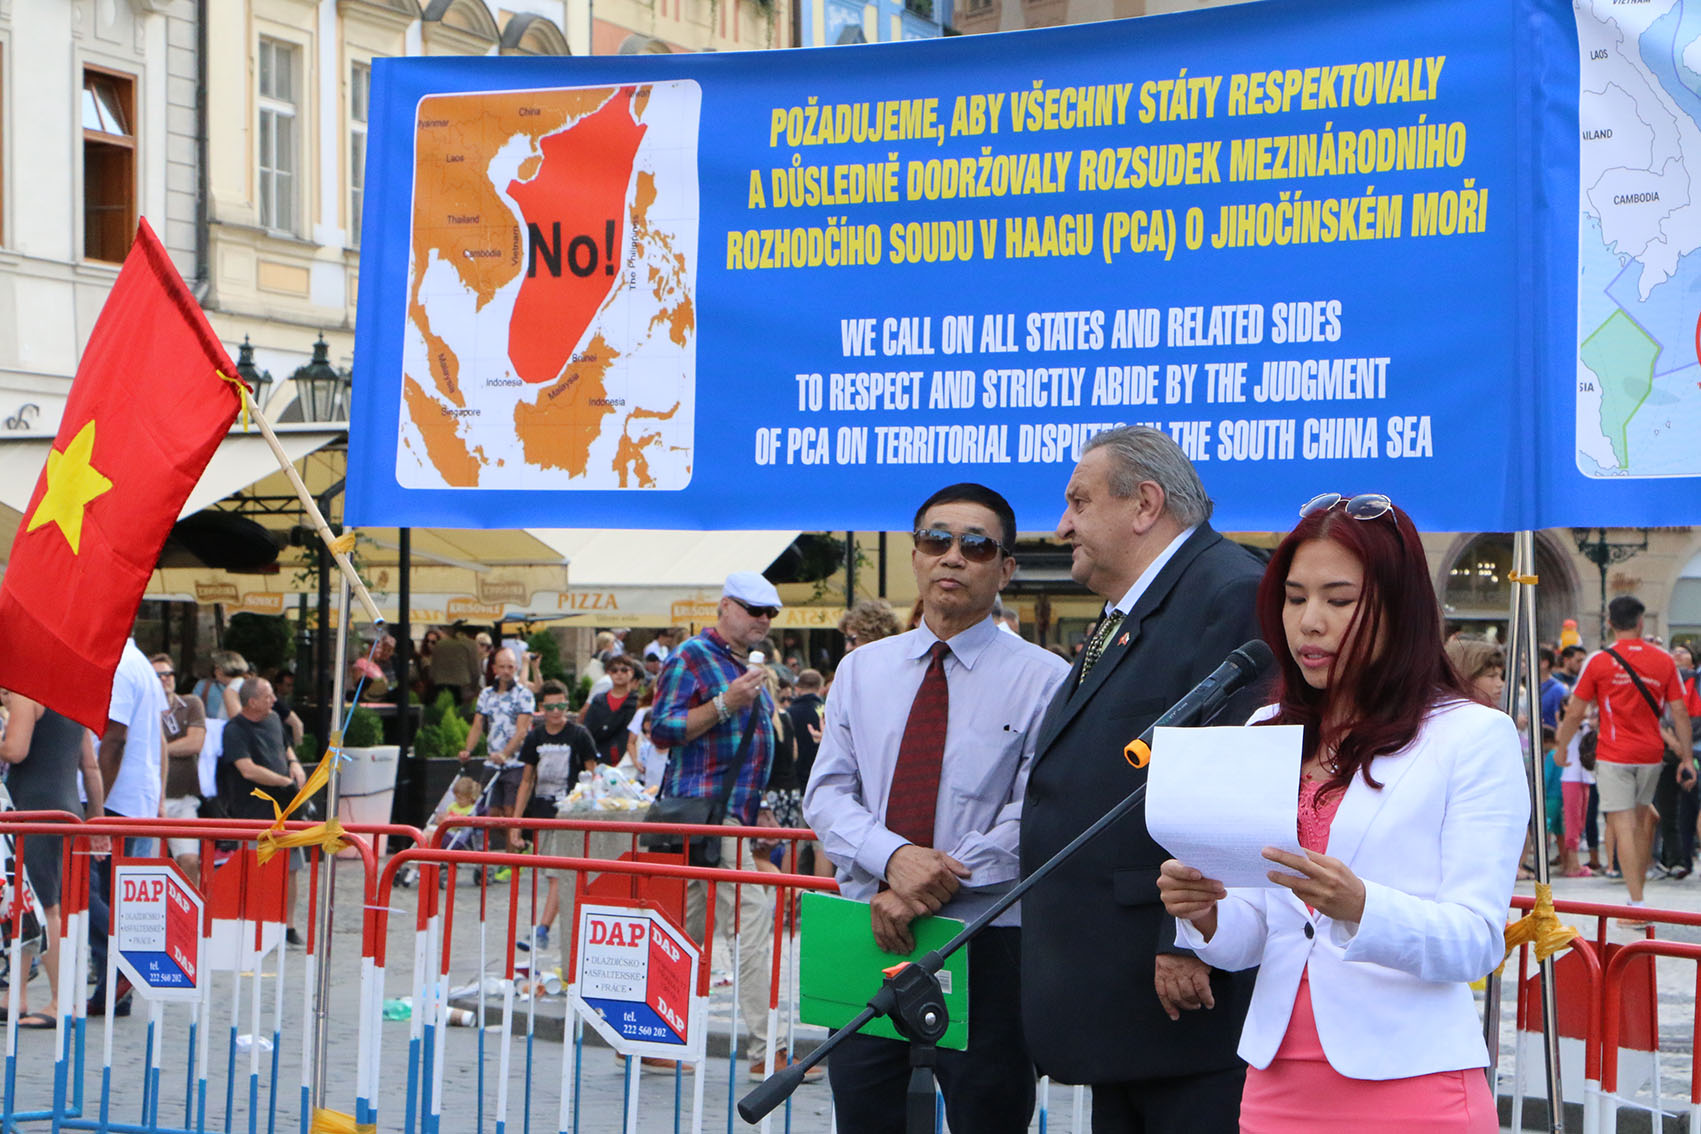 в чехии прошел митинг в знак поддержки решения pca относительно восточного моря hinh 0